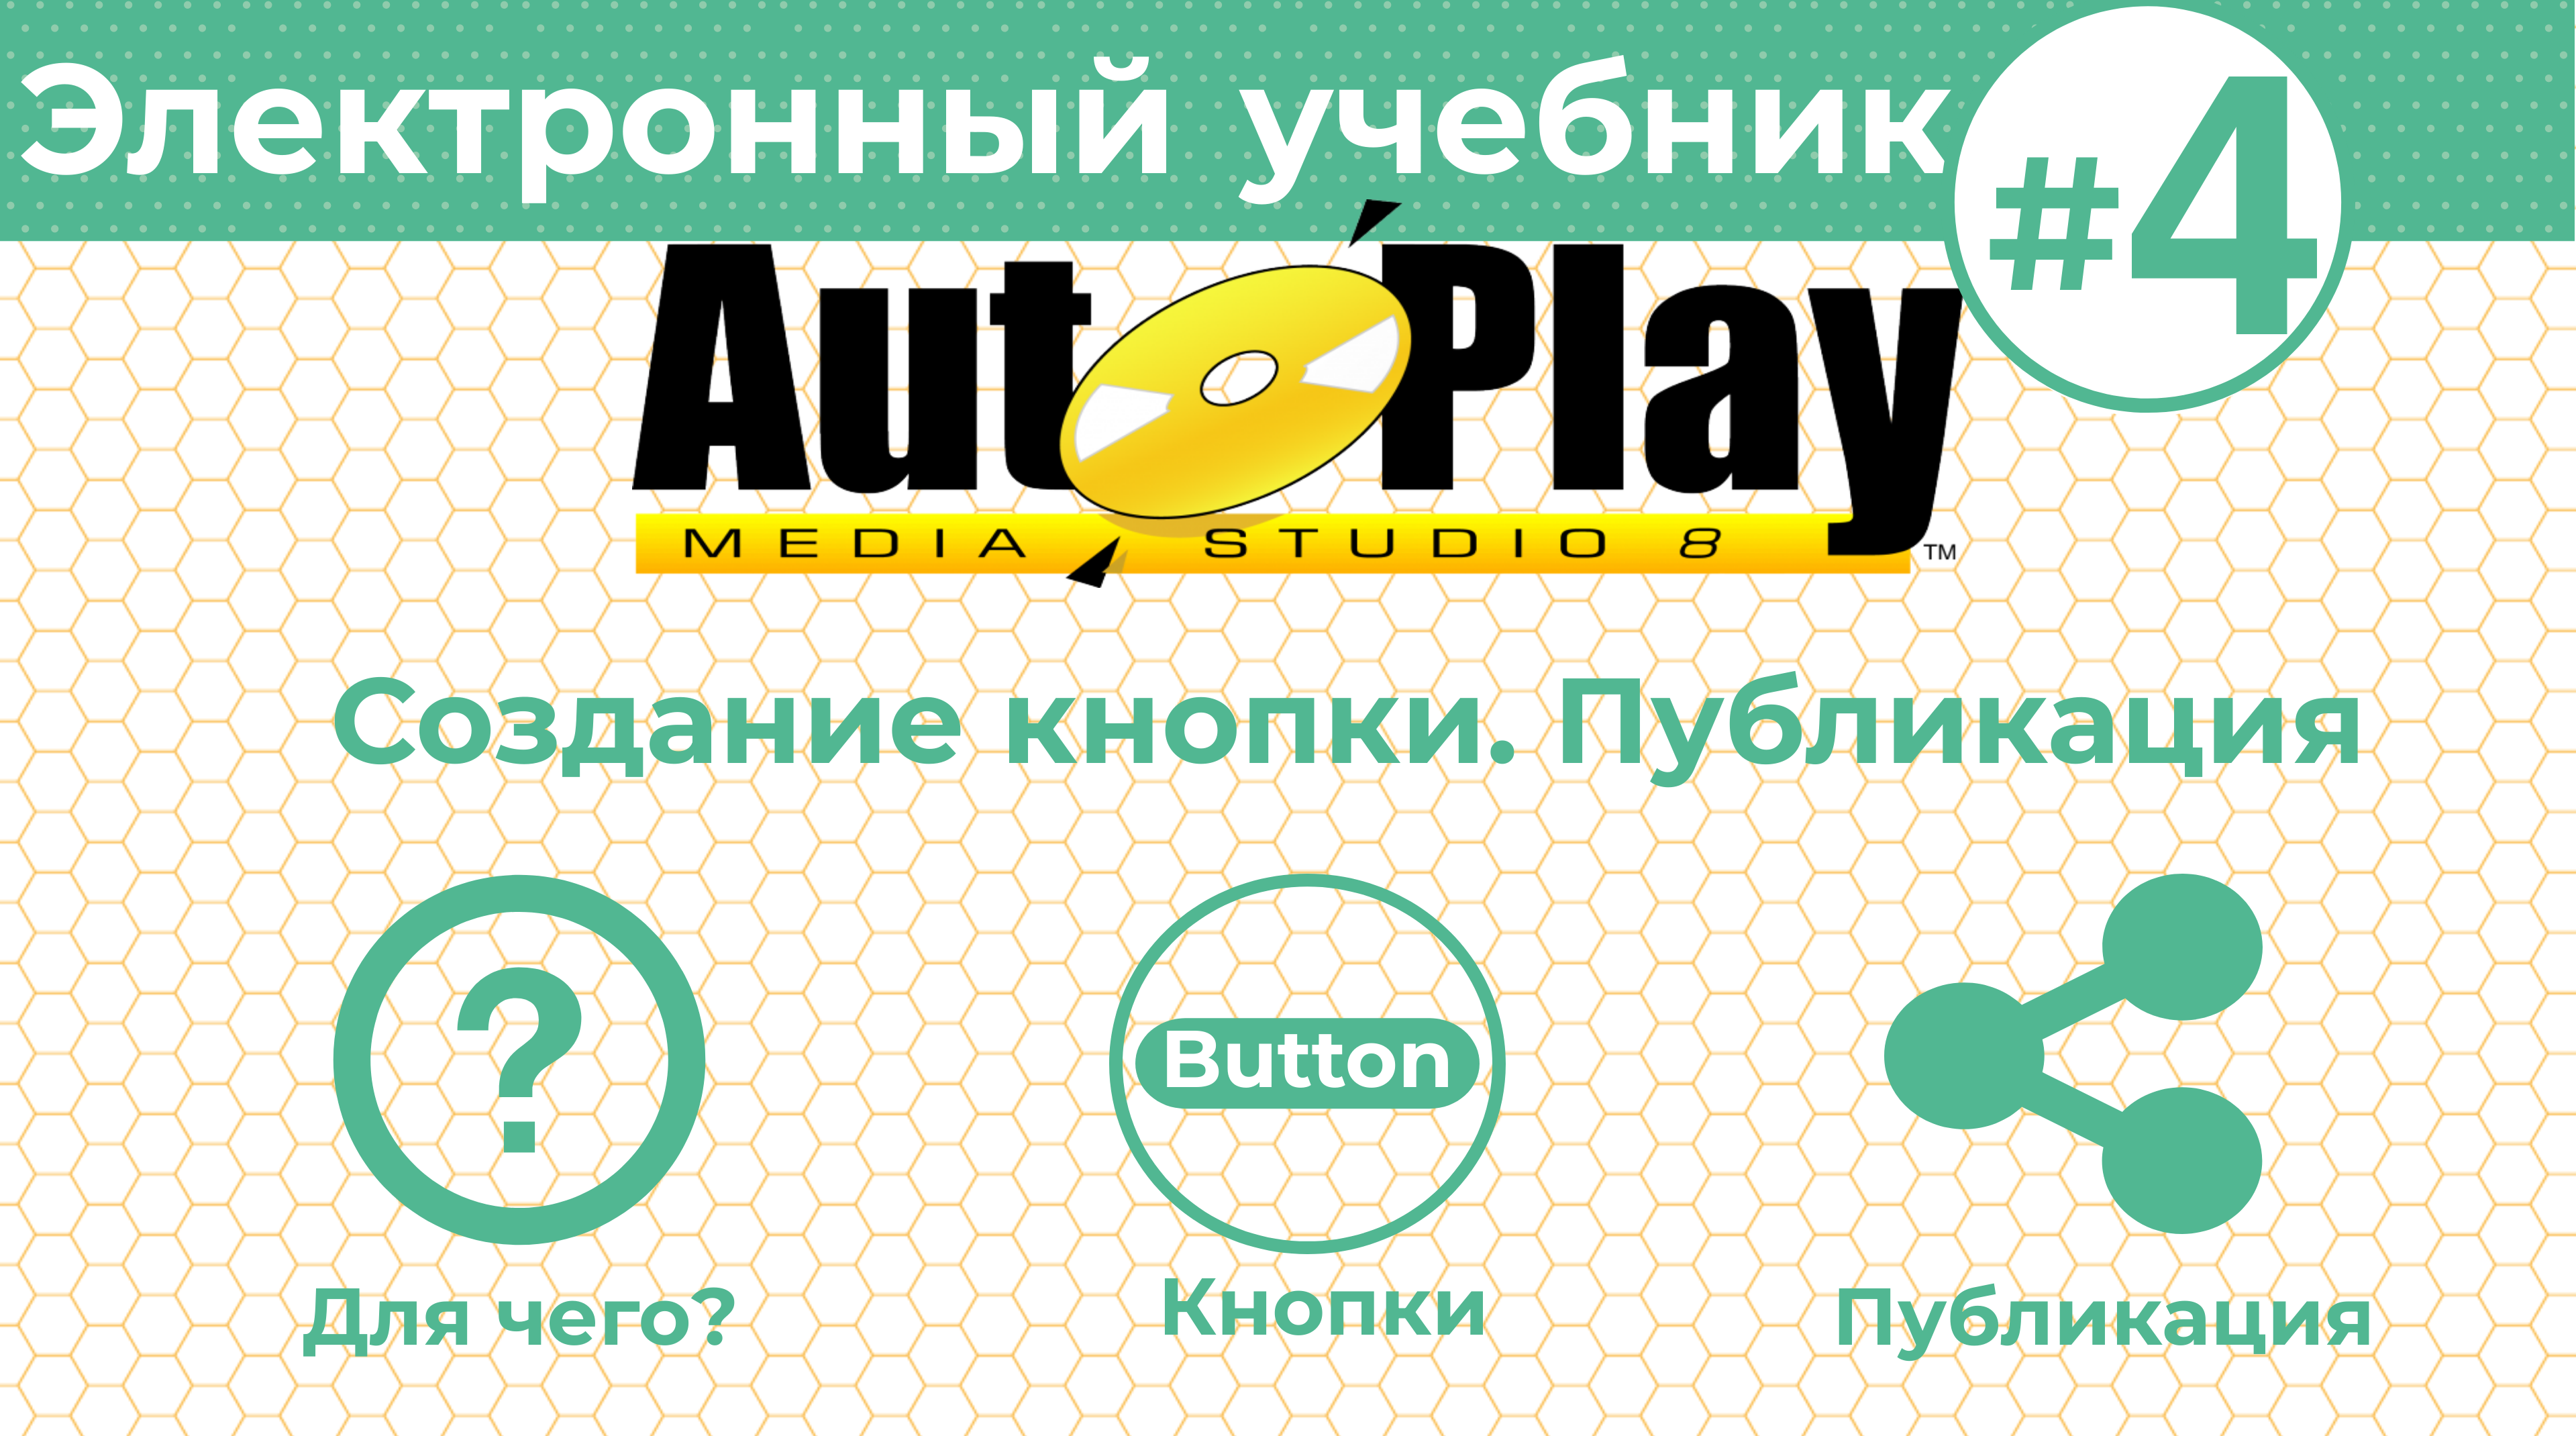 Как создать электронный учебник с AutoPlay Media Studio #4